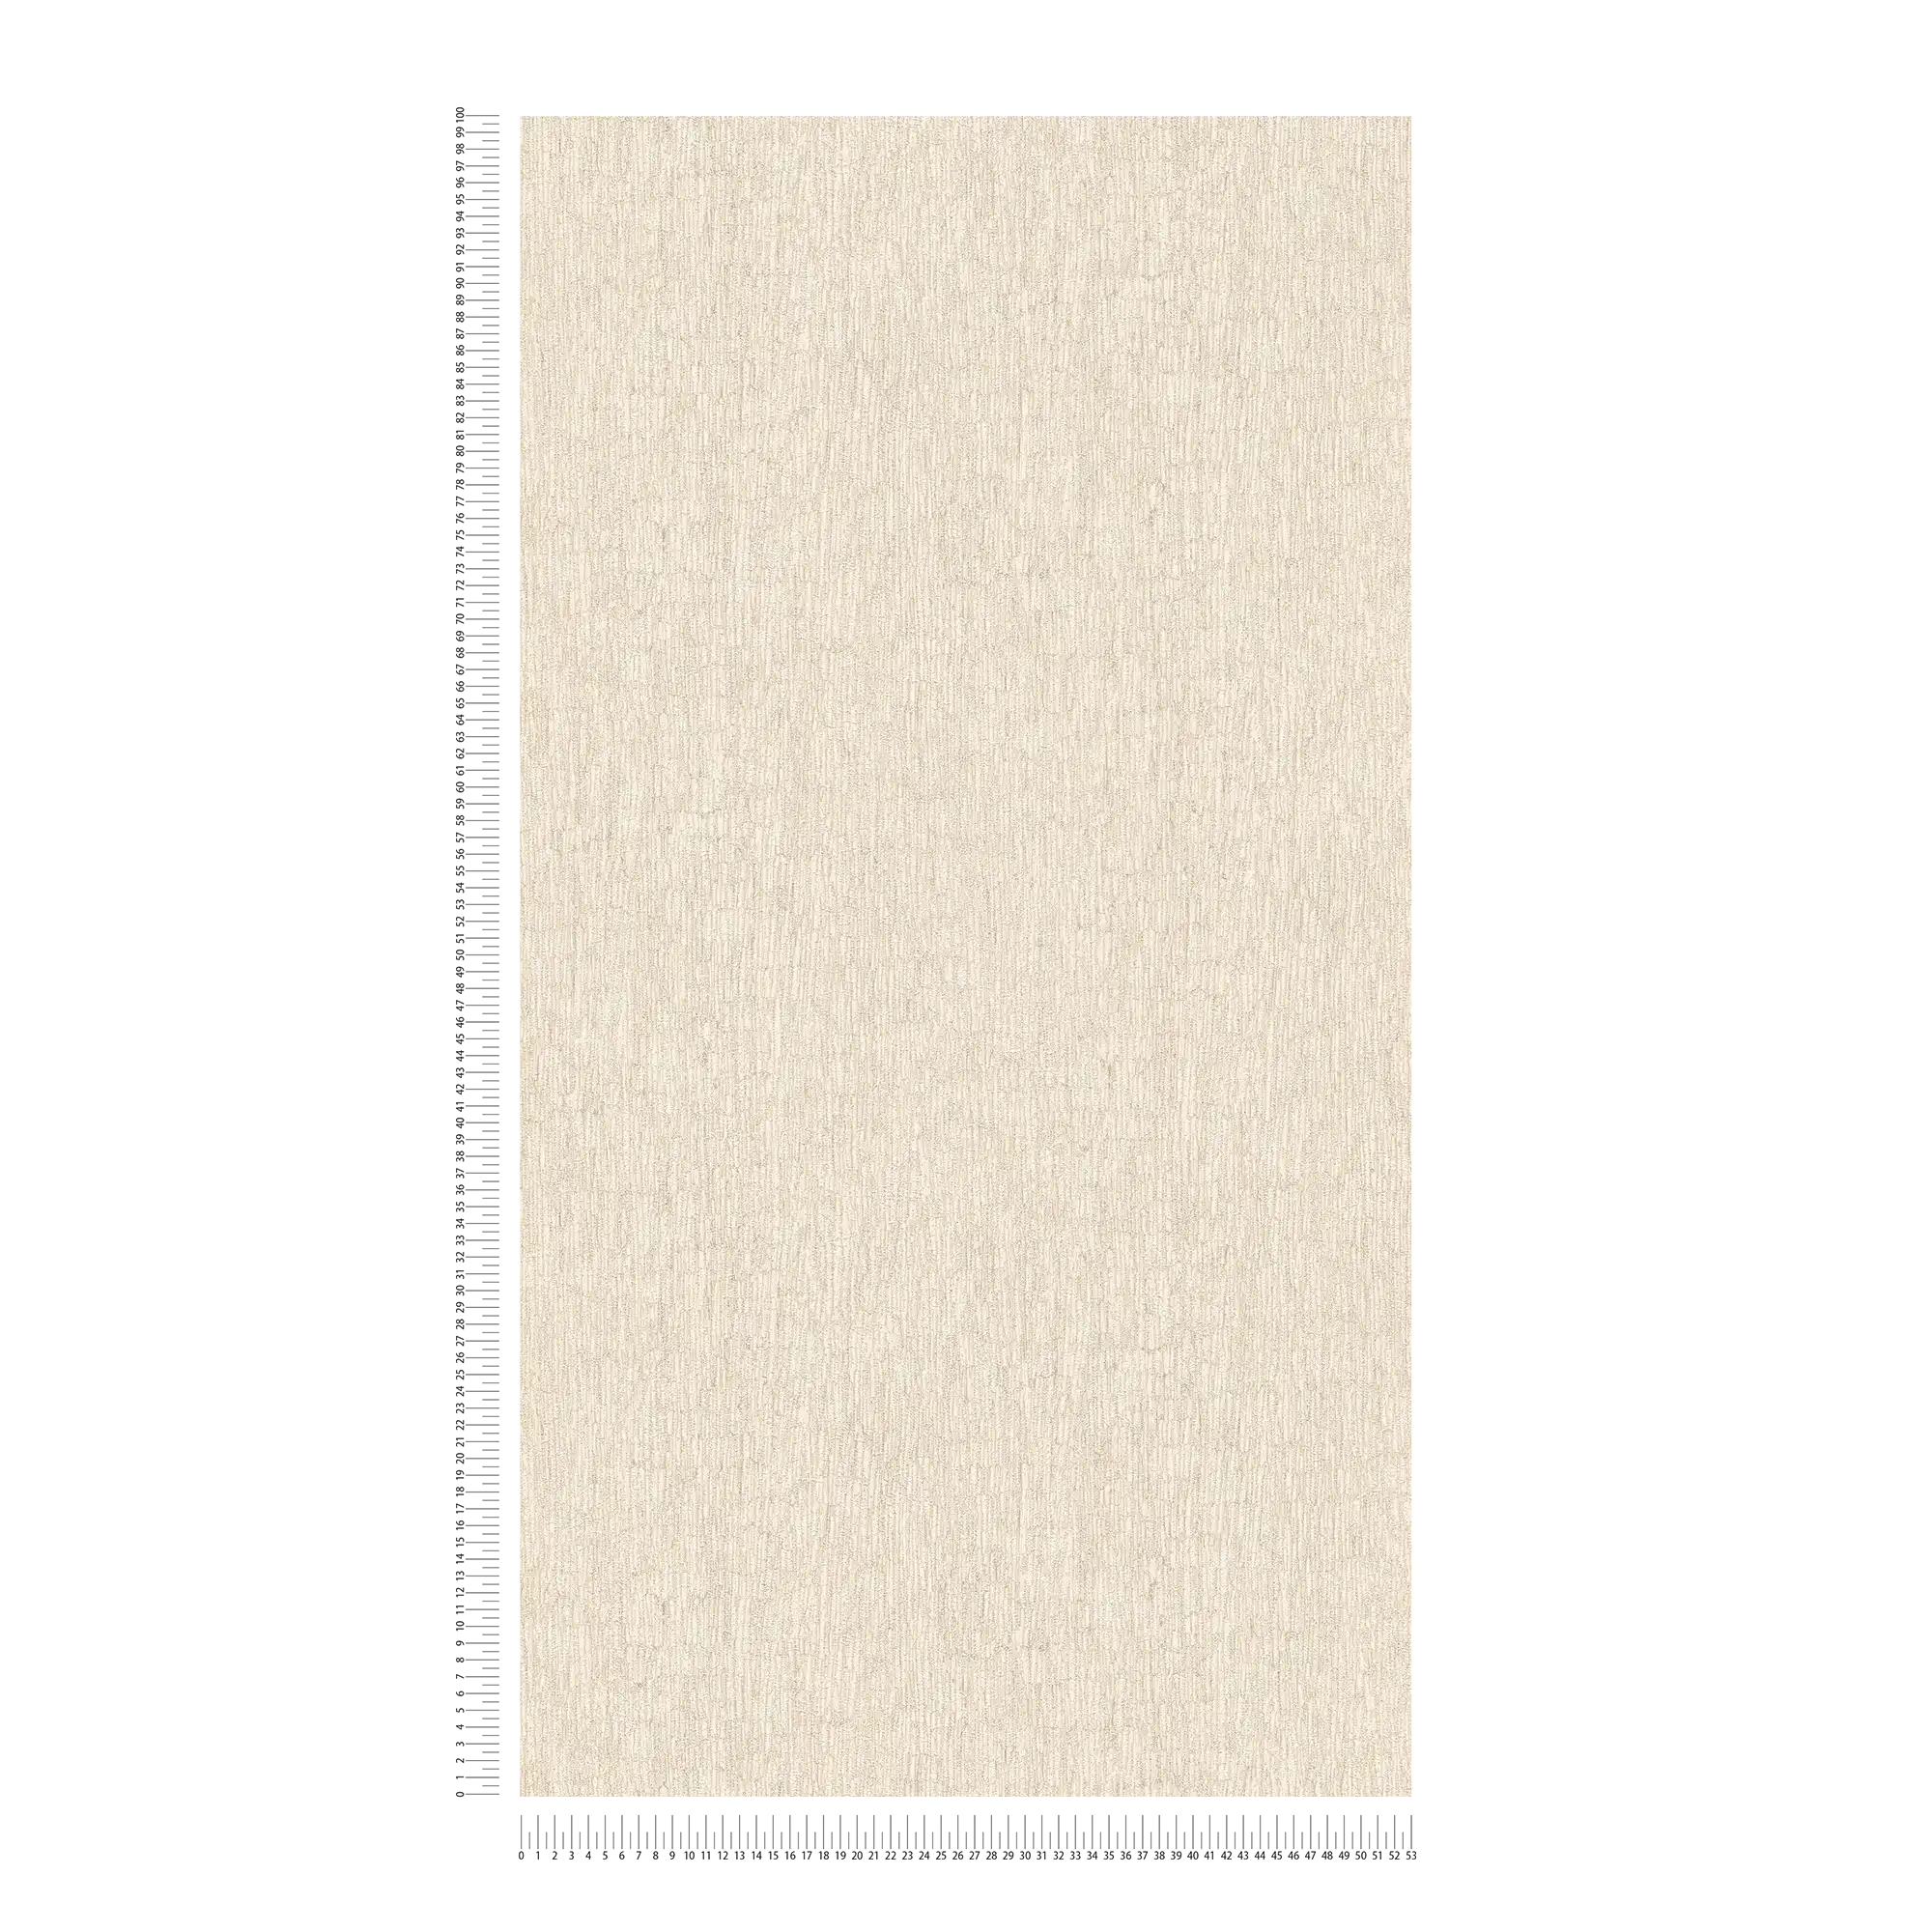             Carta da parati non tessuta effetto gesso, leggermente strutturata - beige, crema, argento
        